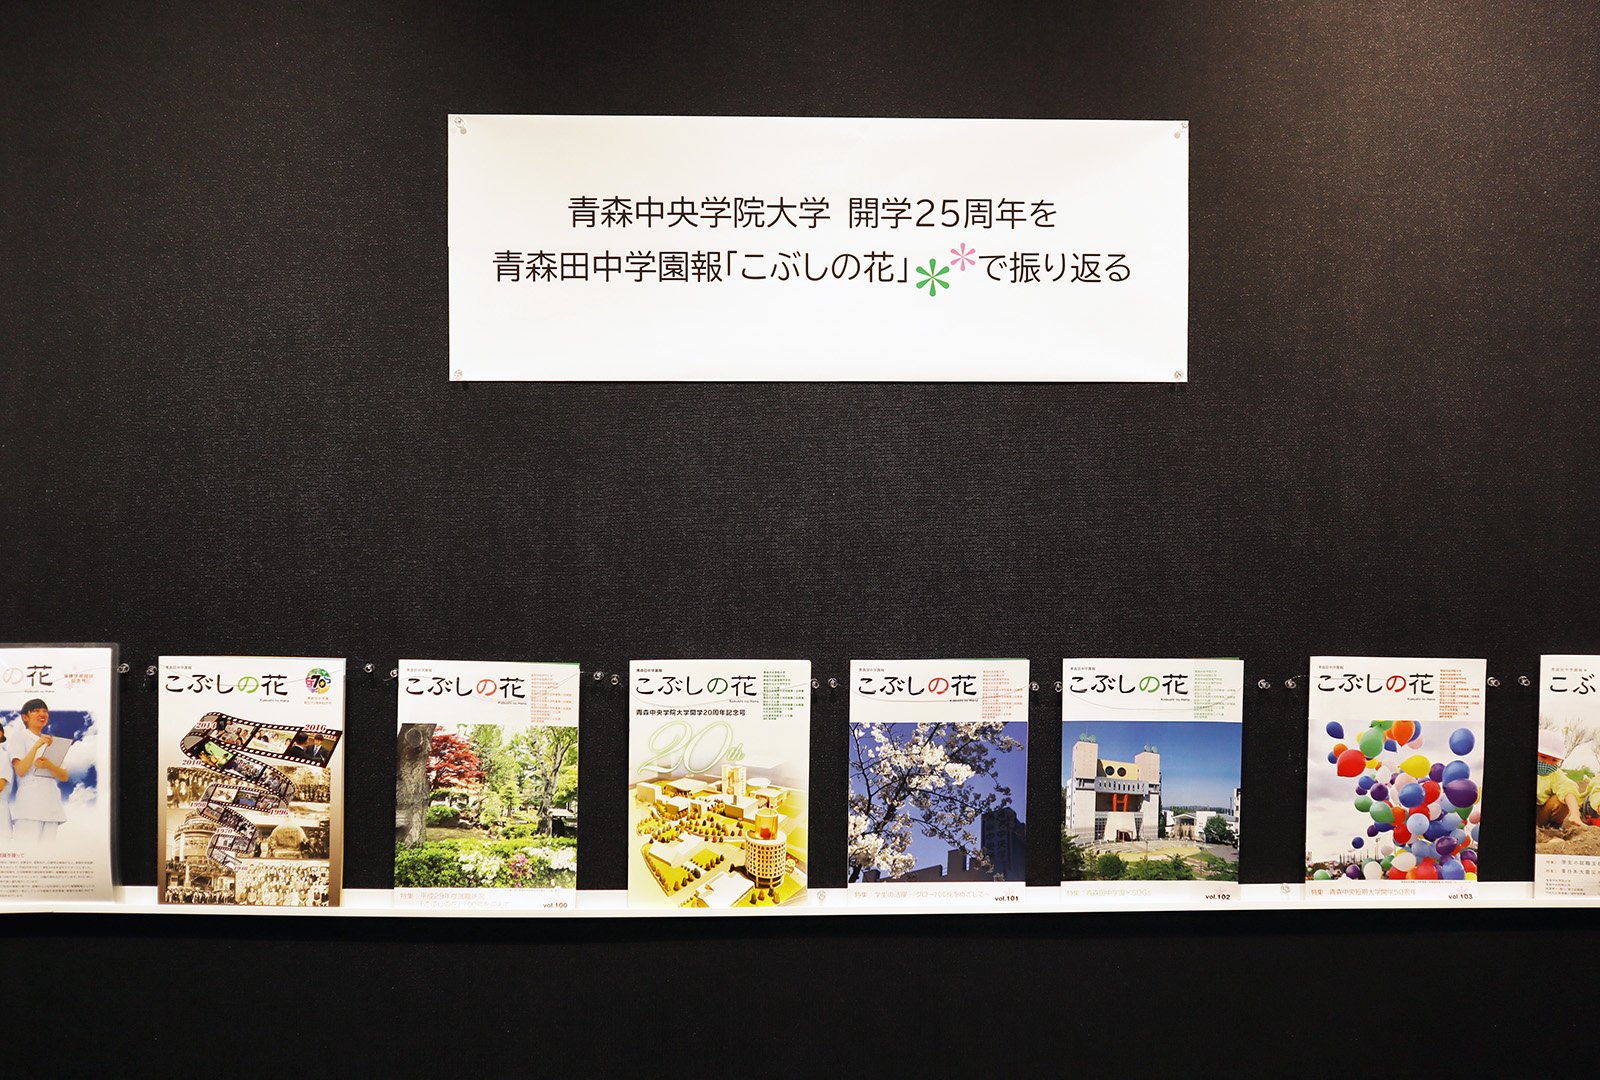 「開学25周年を青森田中学園報『こぶしの花』で振り返る」展示中です